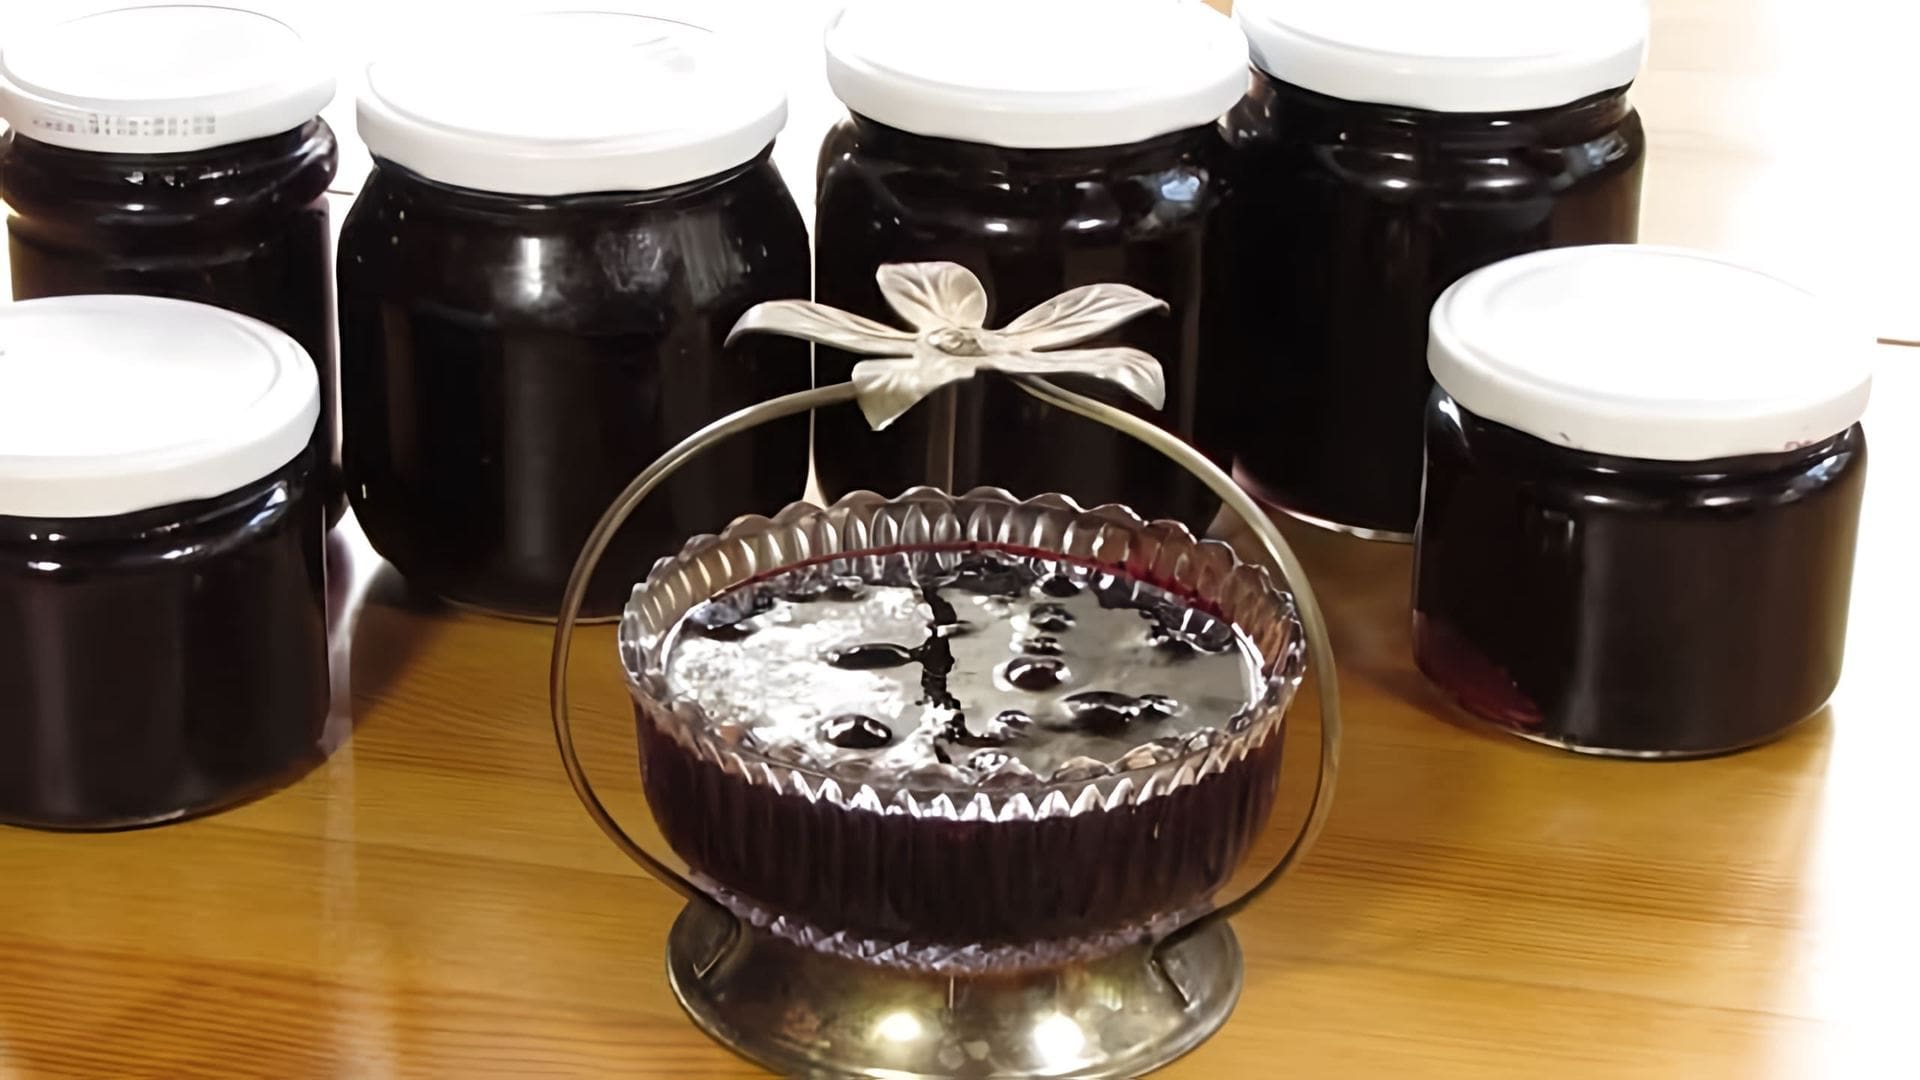 В этом видео демонстрируется процесс приготовления варенья из черной смородины по рецепту свекрови